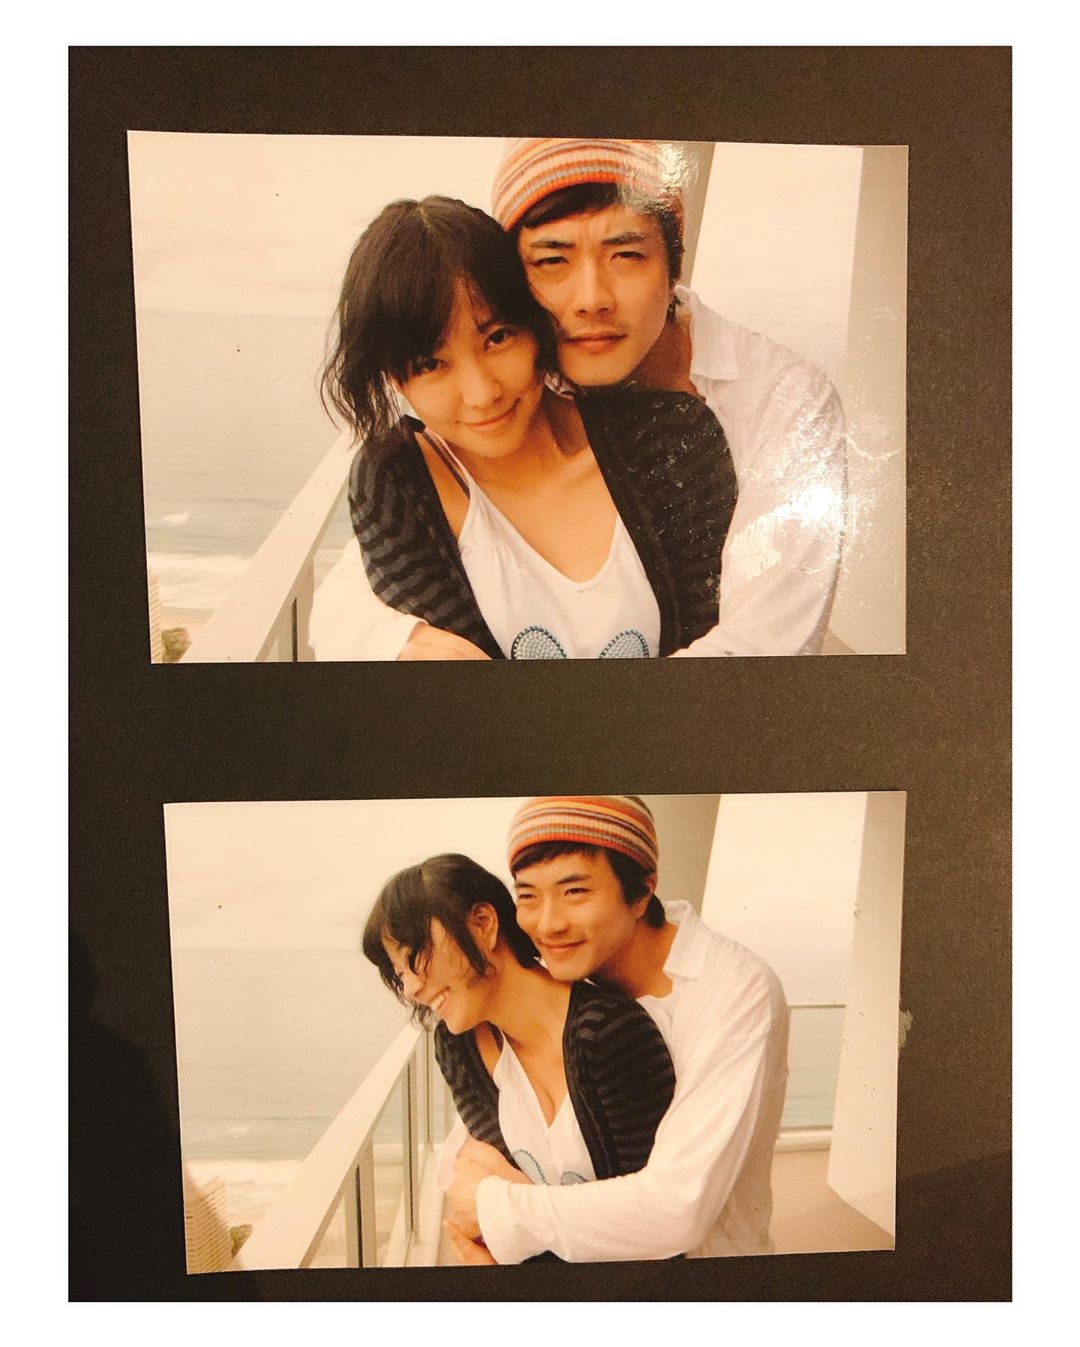 ソン・テヨン、夫クォン・サンウとの恋人時代の写真公開